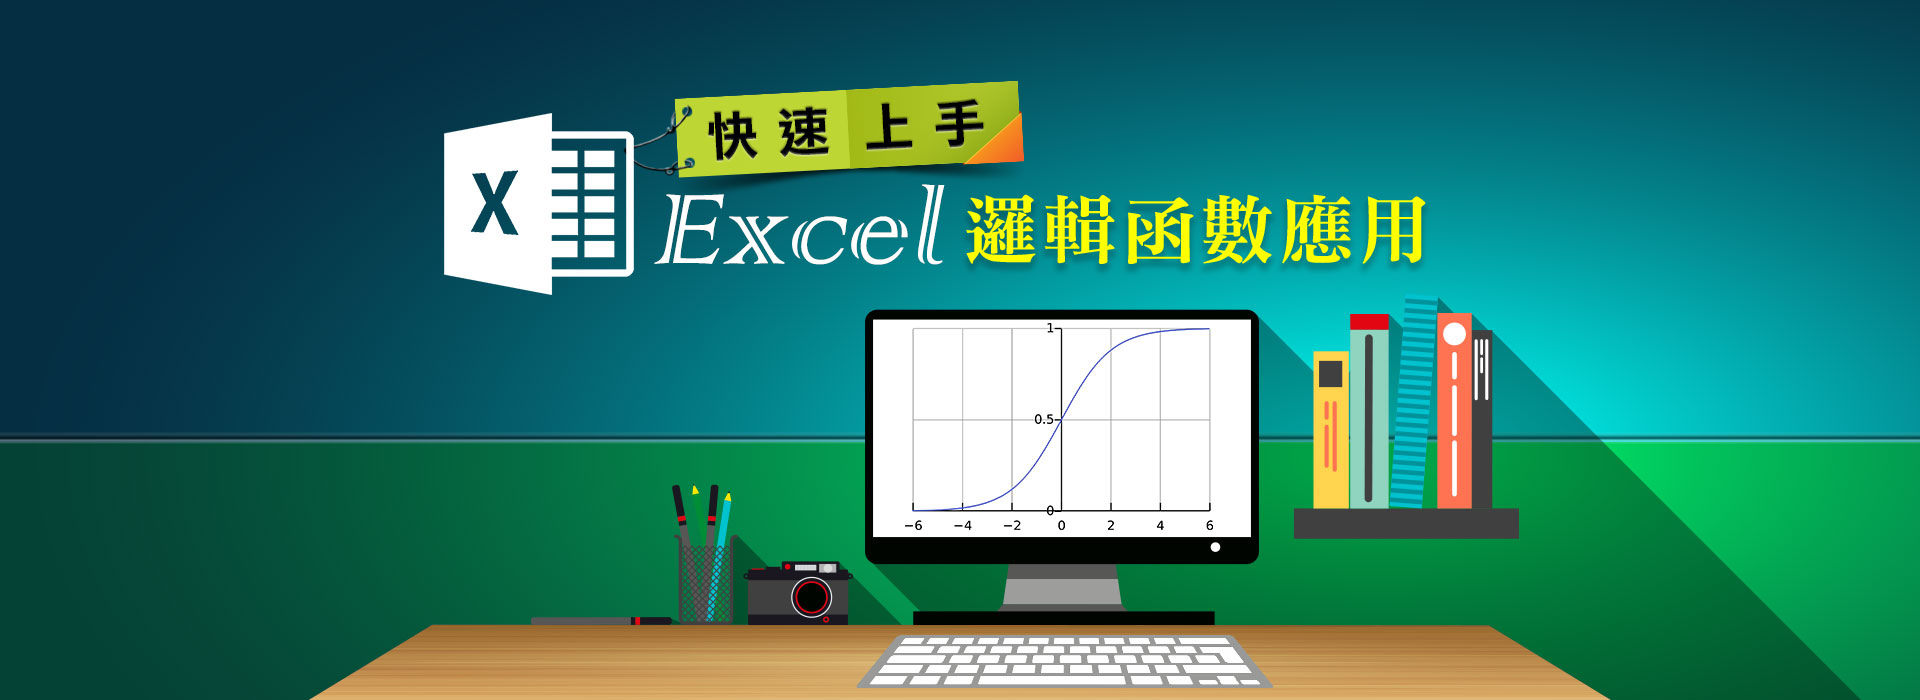 快速上手-Excel 邏輯函數應用